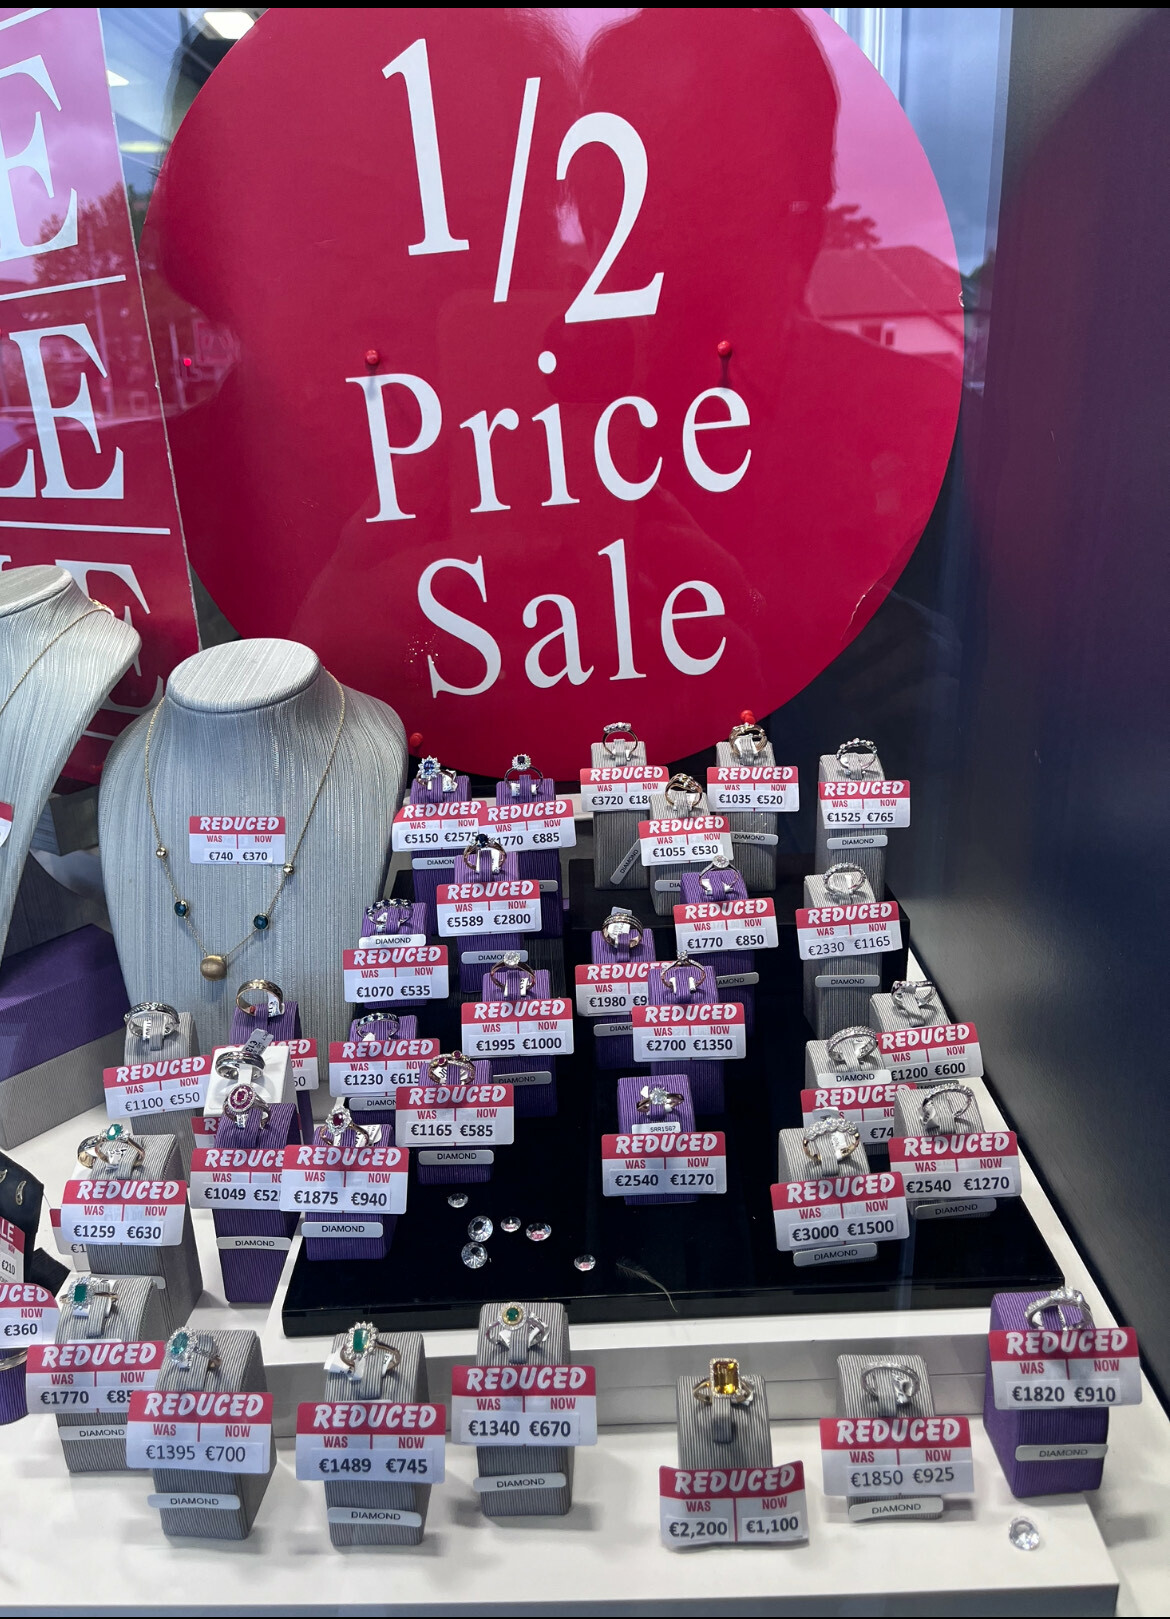 Half Price Diamond Sale for Philips Jewelers